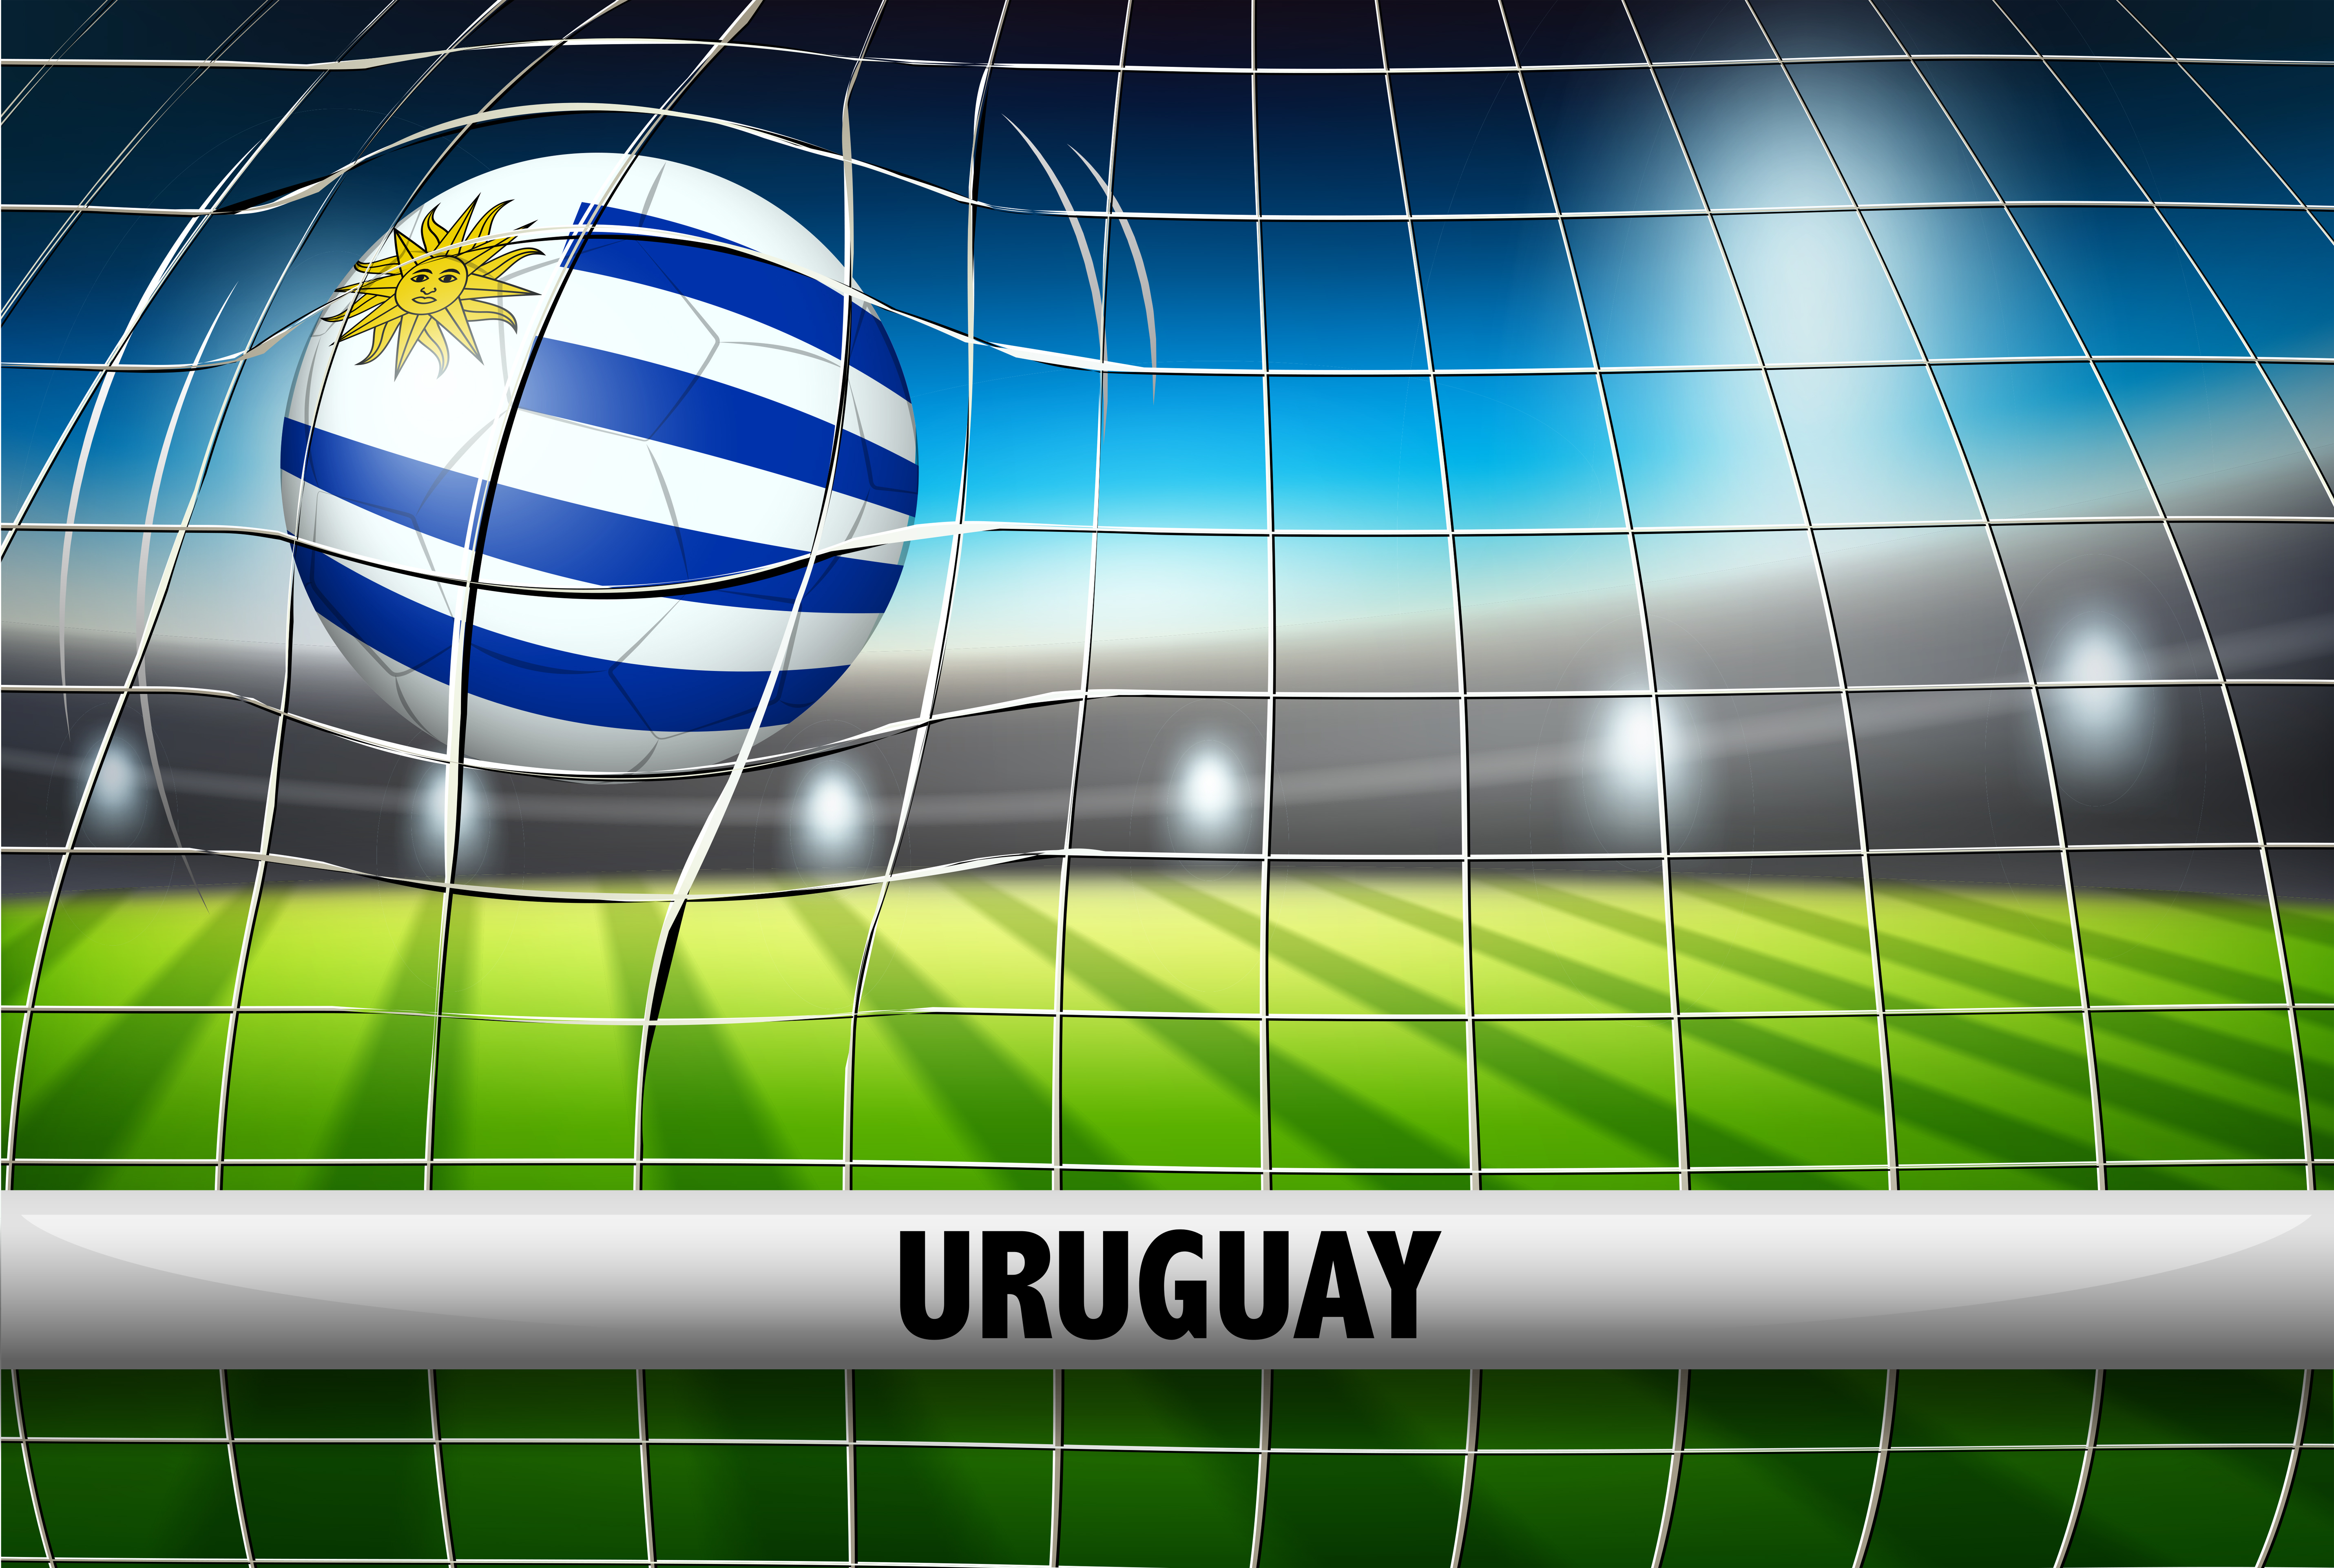 El Uruguay hecho pelota - FutbolFlorida